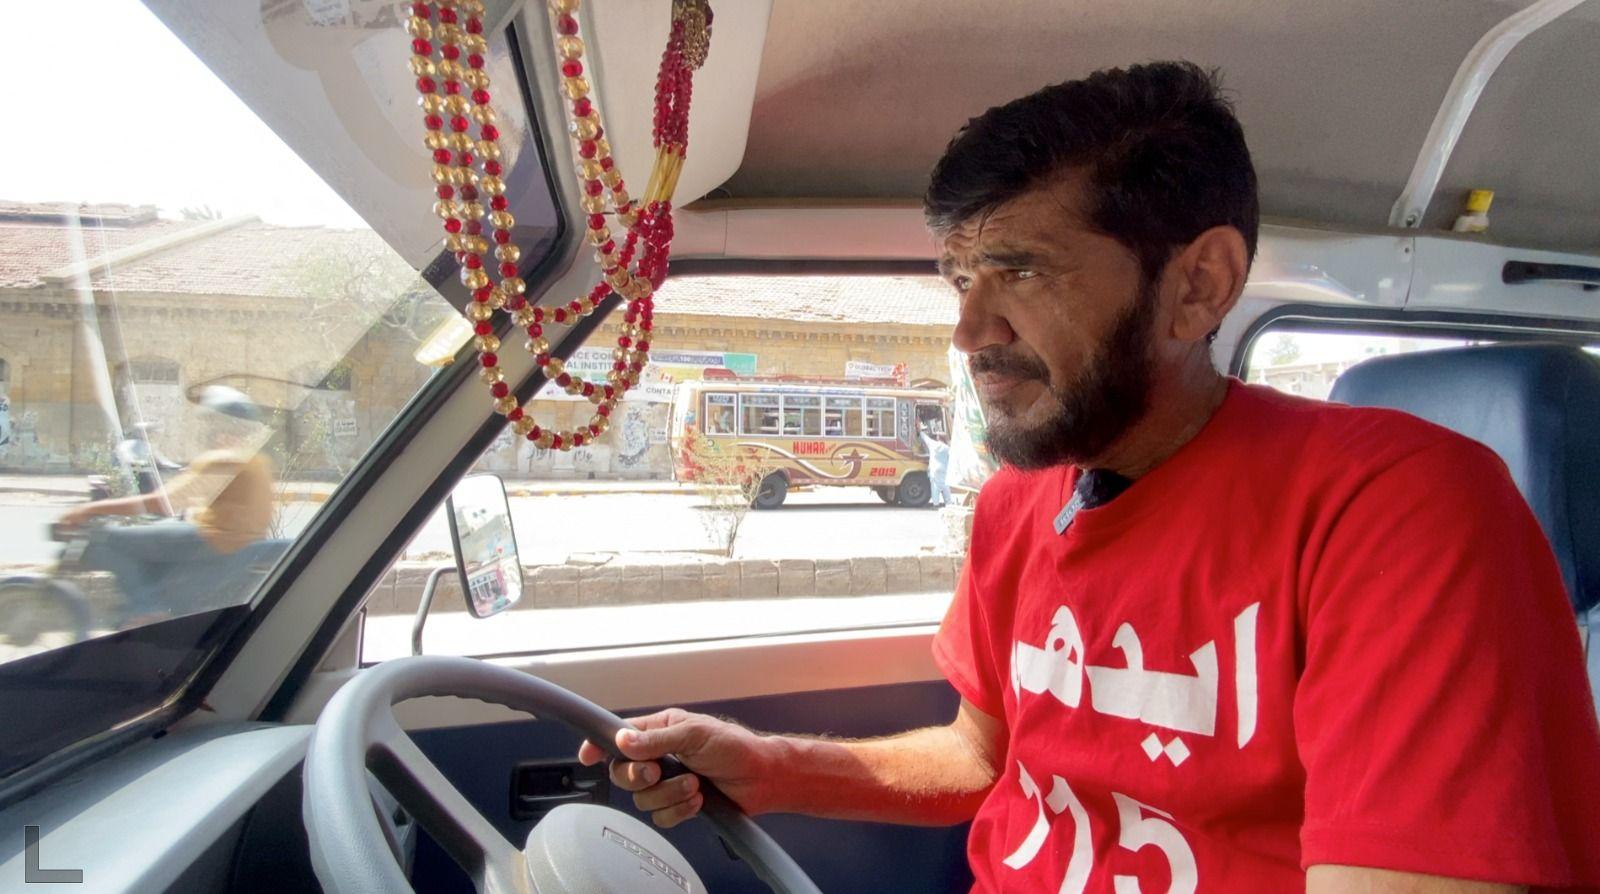 Shabir Zaman gibi ambulans şoförleri de Karaçi'deki sıcak hava dalgasıyla mücadele ediyor